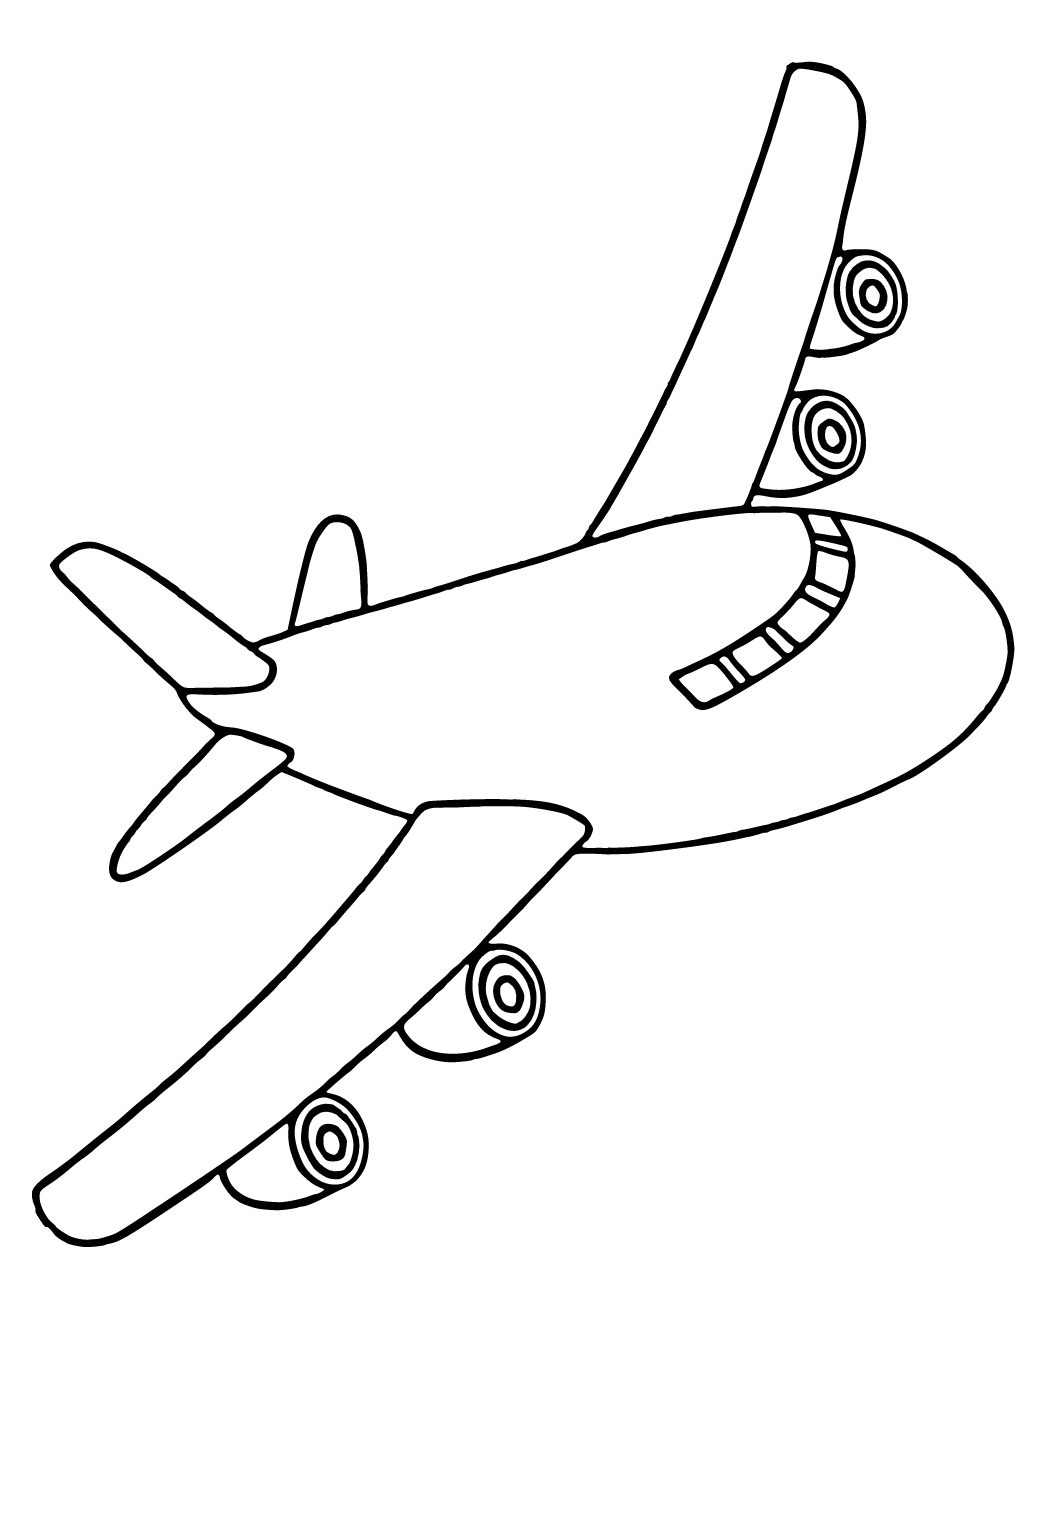 Letalo